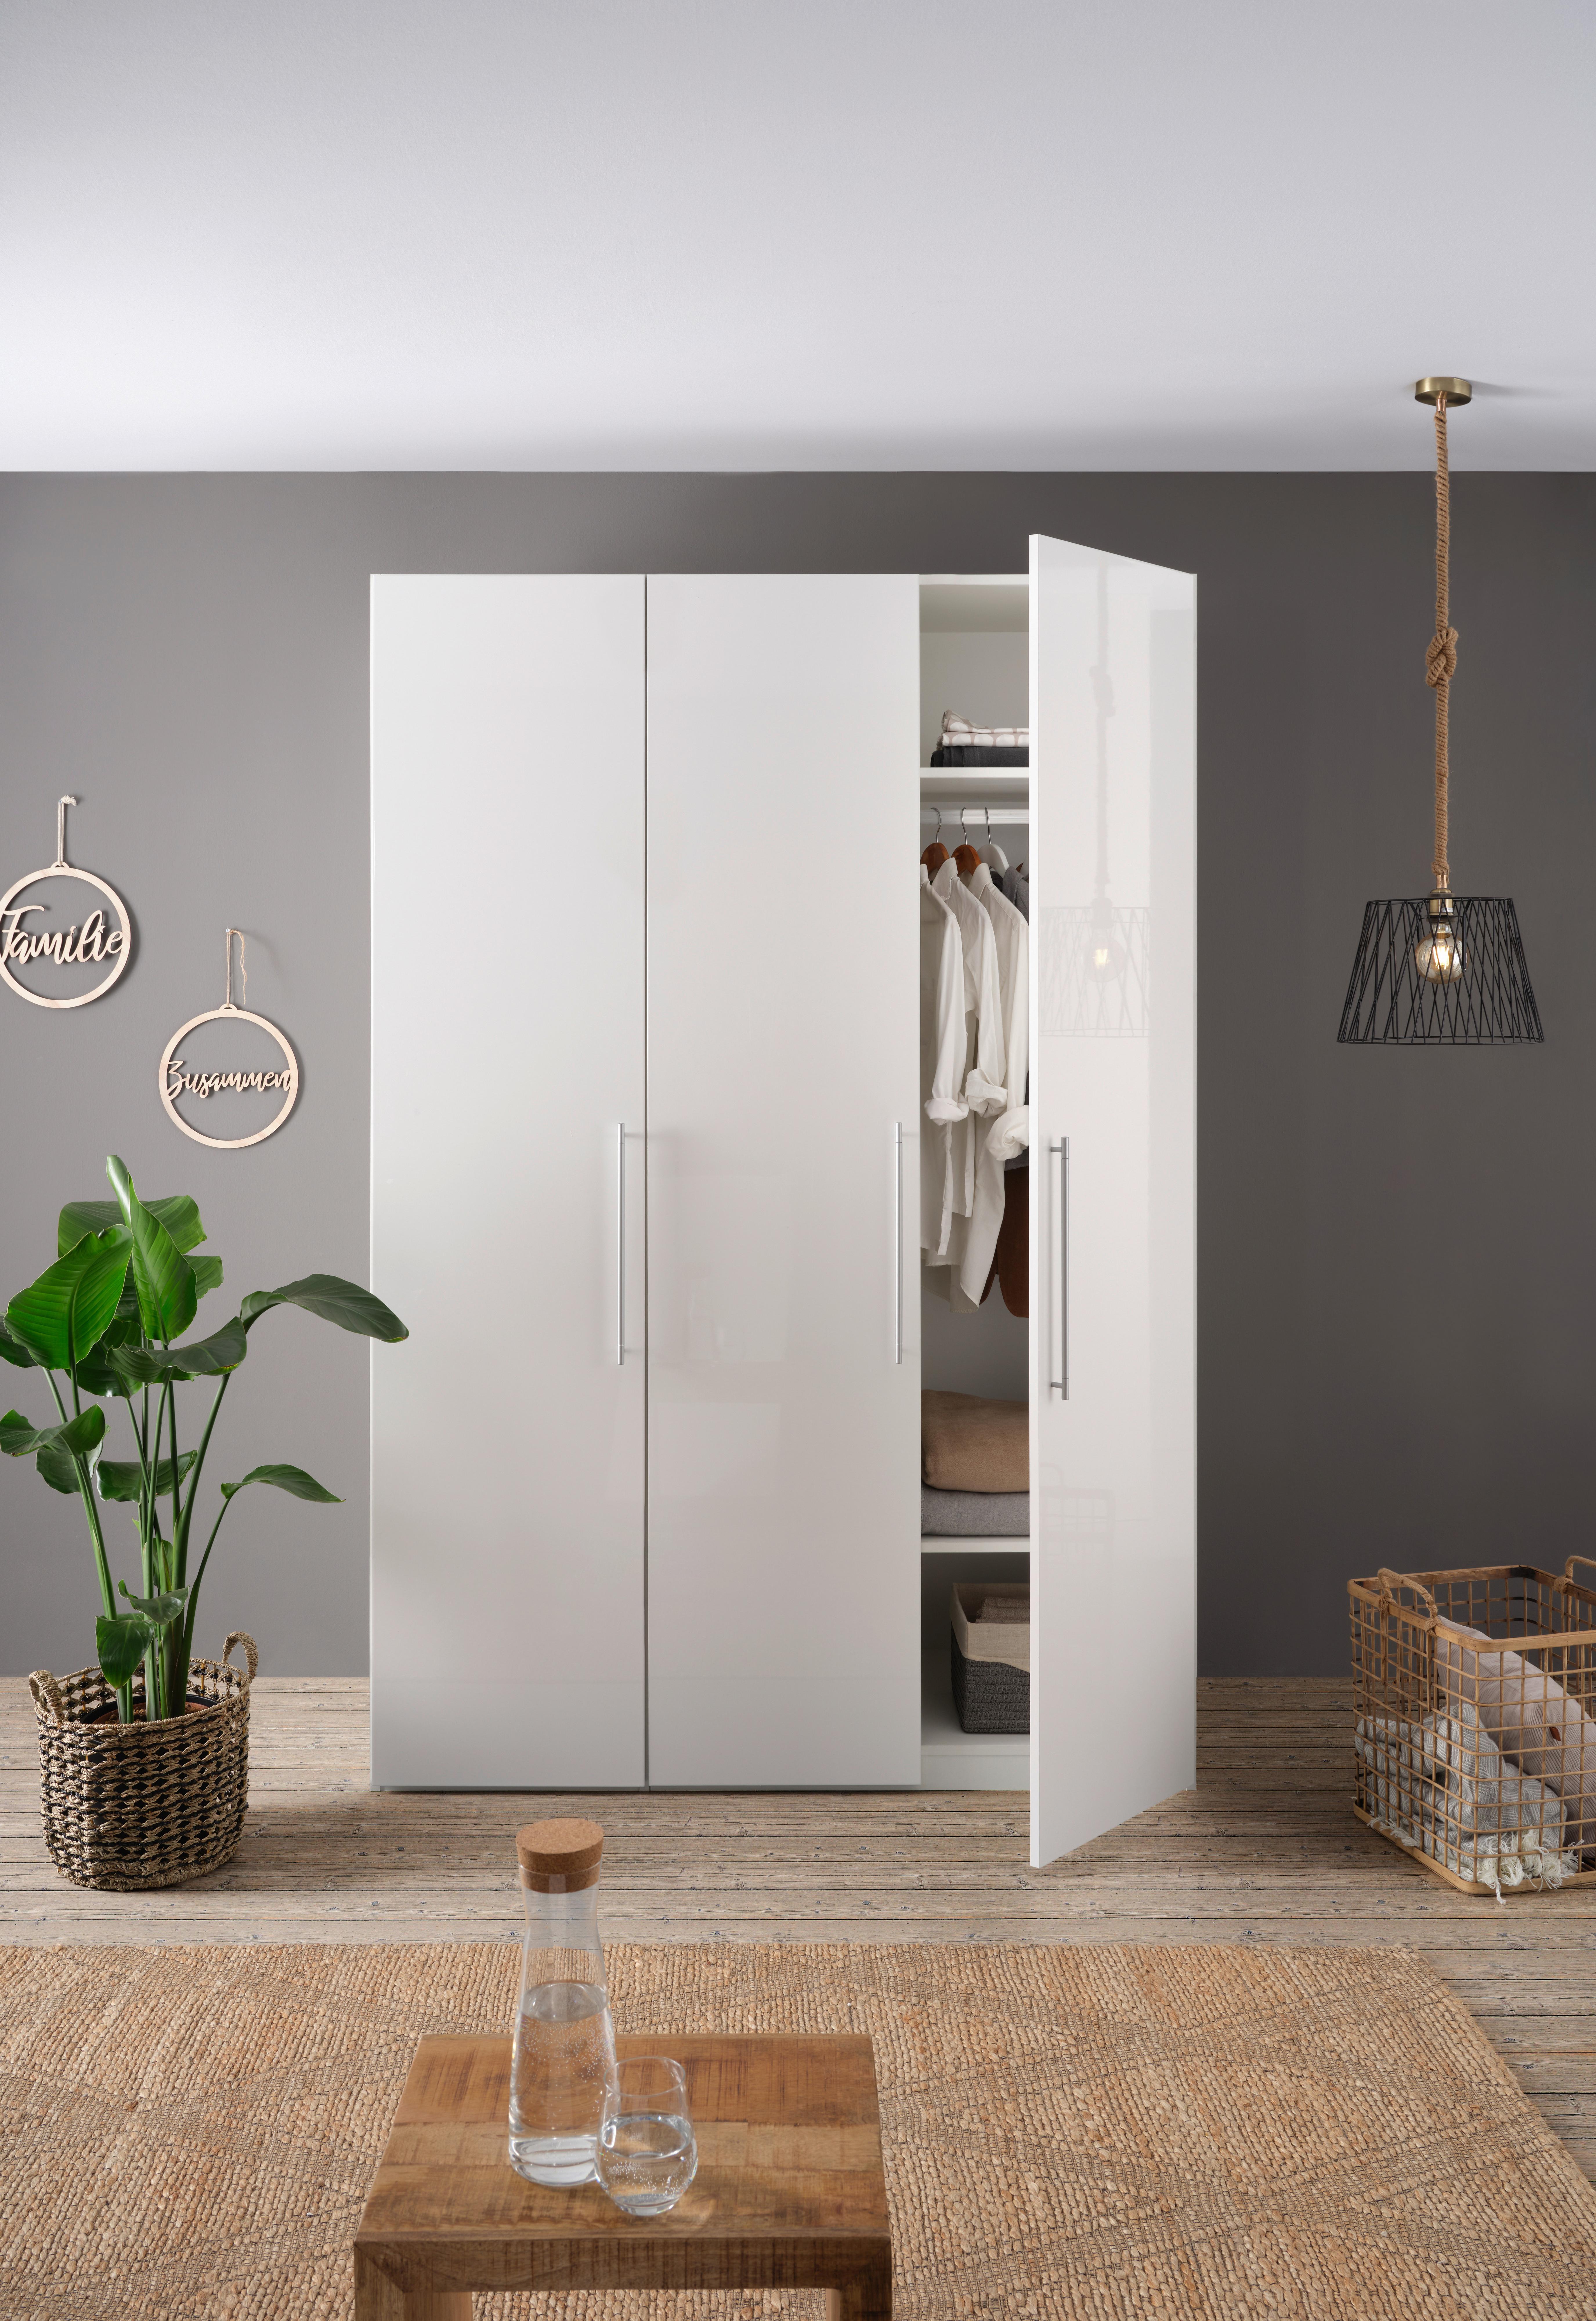 Drehtürenschrank Glossy in Weiß ca. 147x219x60cm - Chromfarben/Weiß, MODERN, Holzwerkstoff/Metall (147/219/60cm) - Modern Living